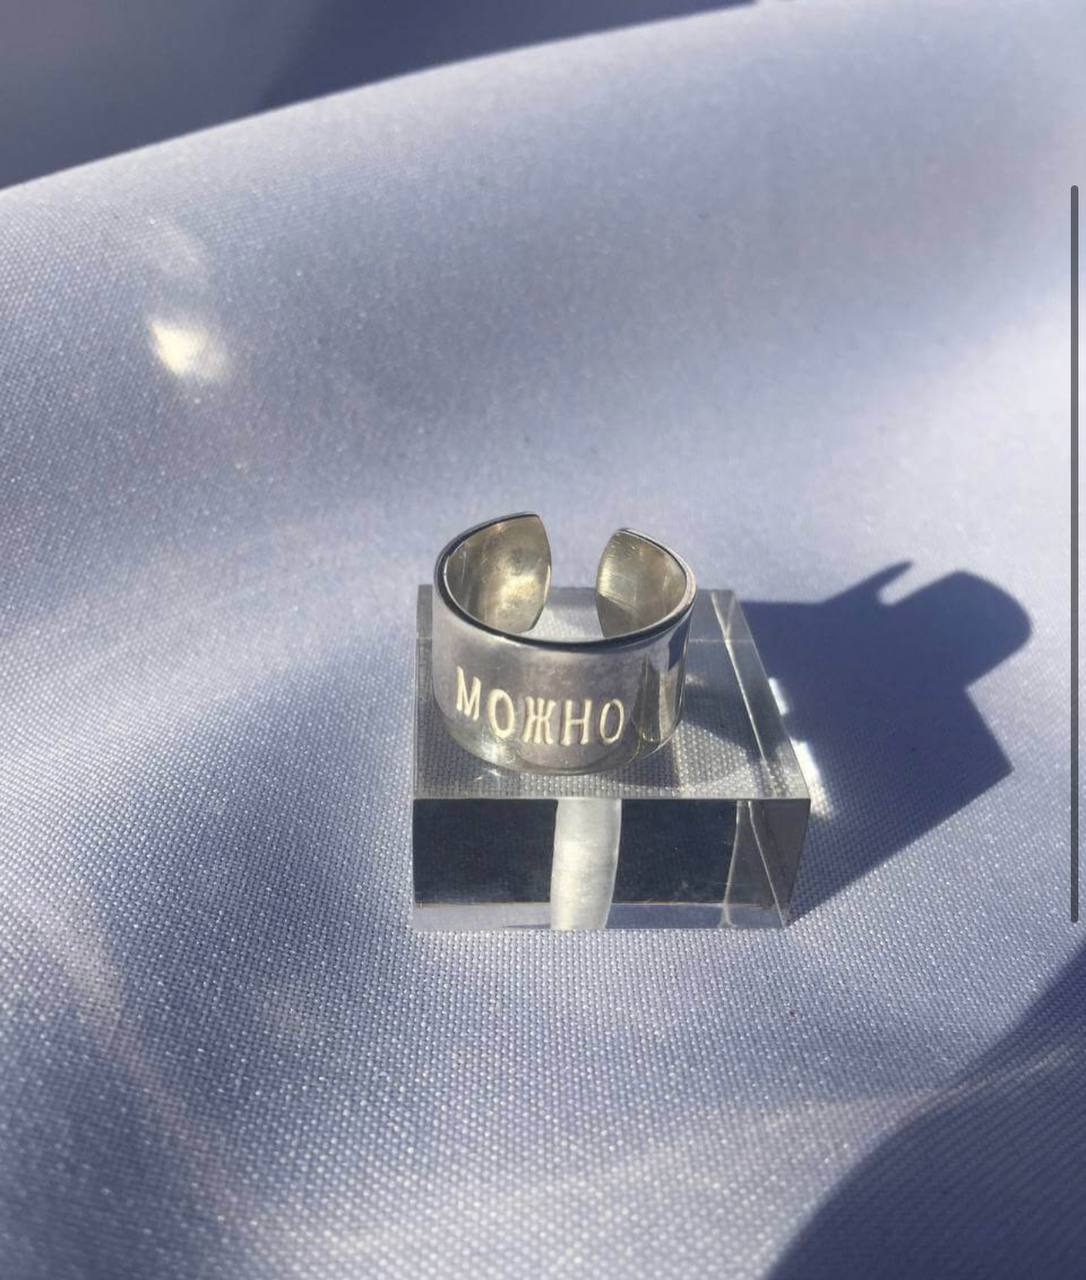 Кольцо «Можно» от Веры Мусаелян («АлоэВера»). Кольцо авторского дизайна из серебра, весом 50 грамм. При покупке конкретным приобретателем оно будет изготовлено по его размеру